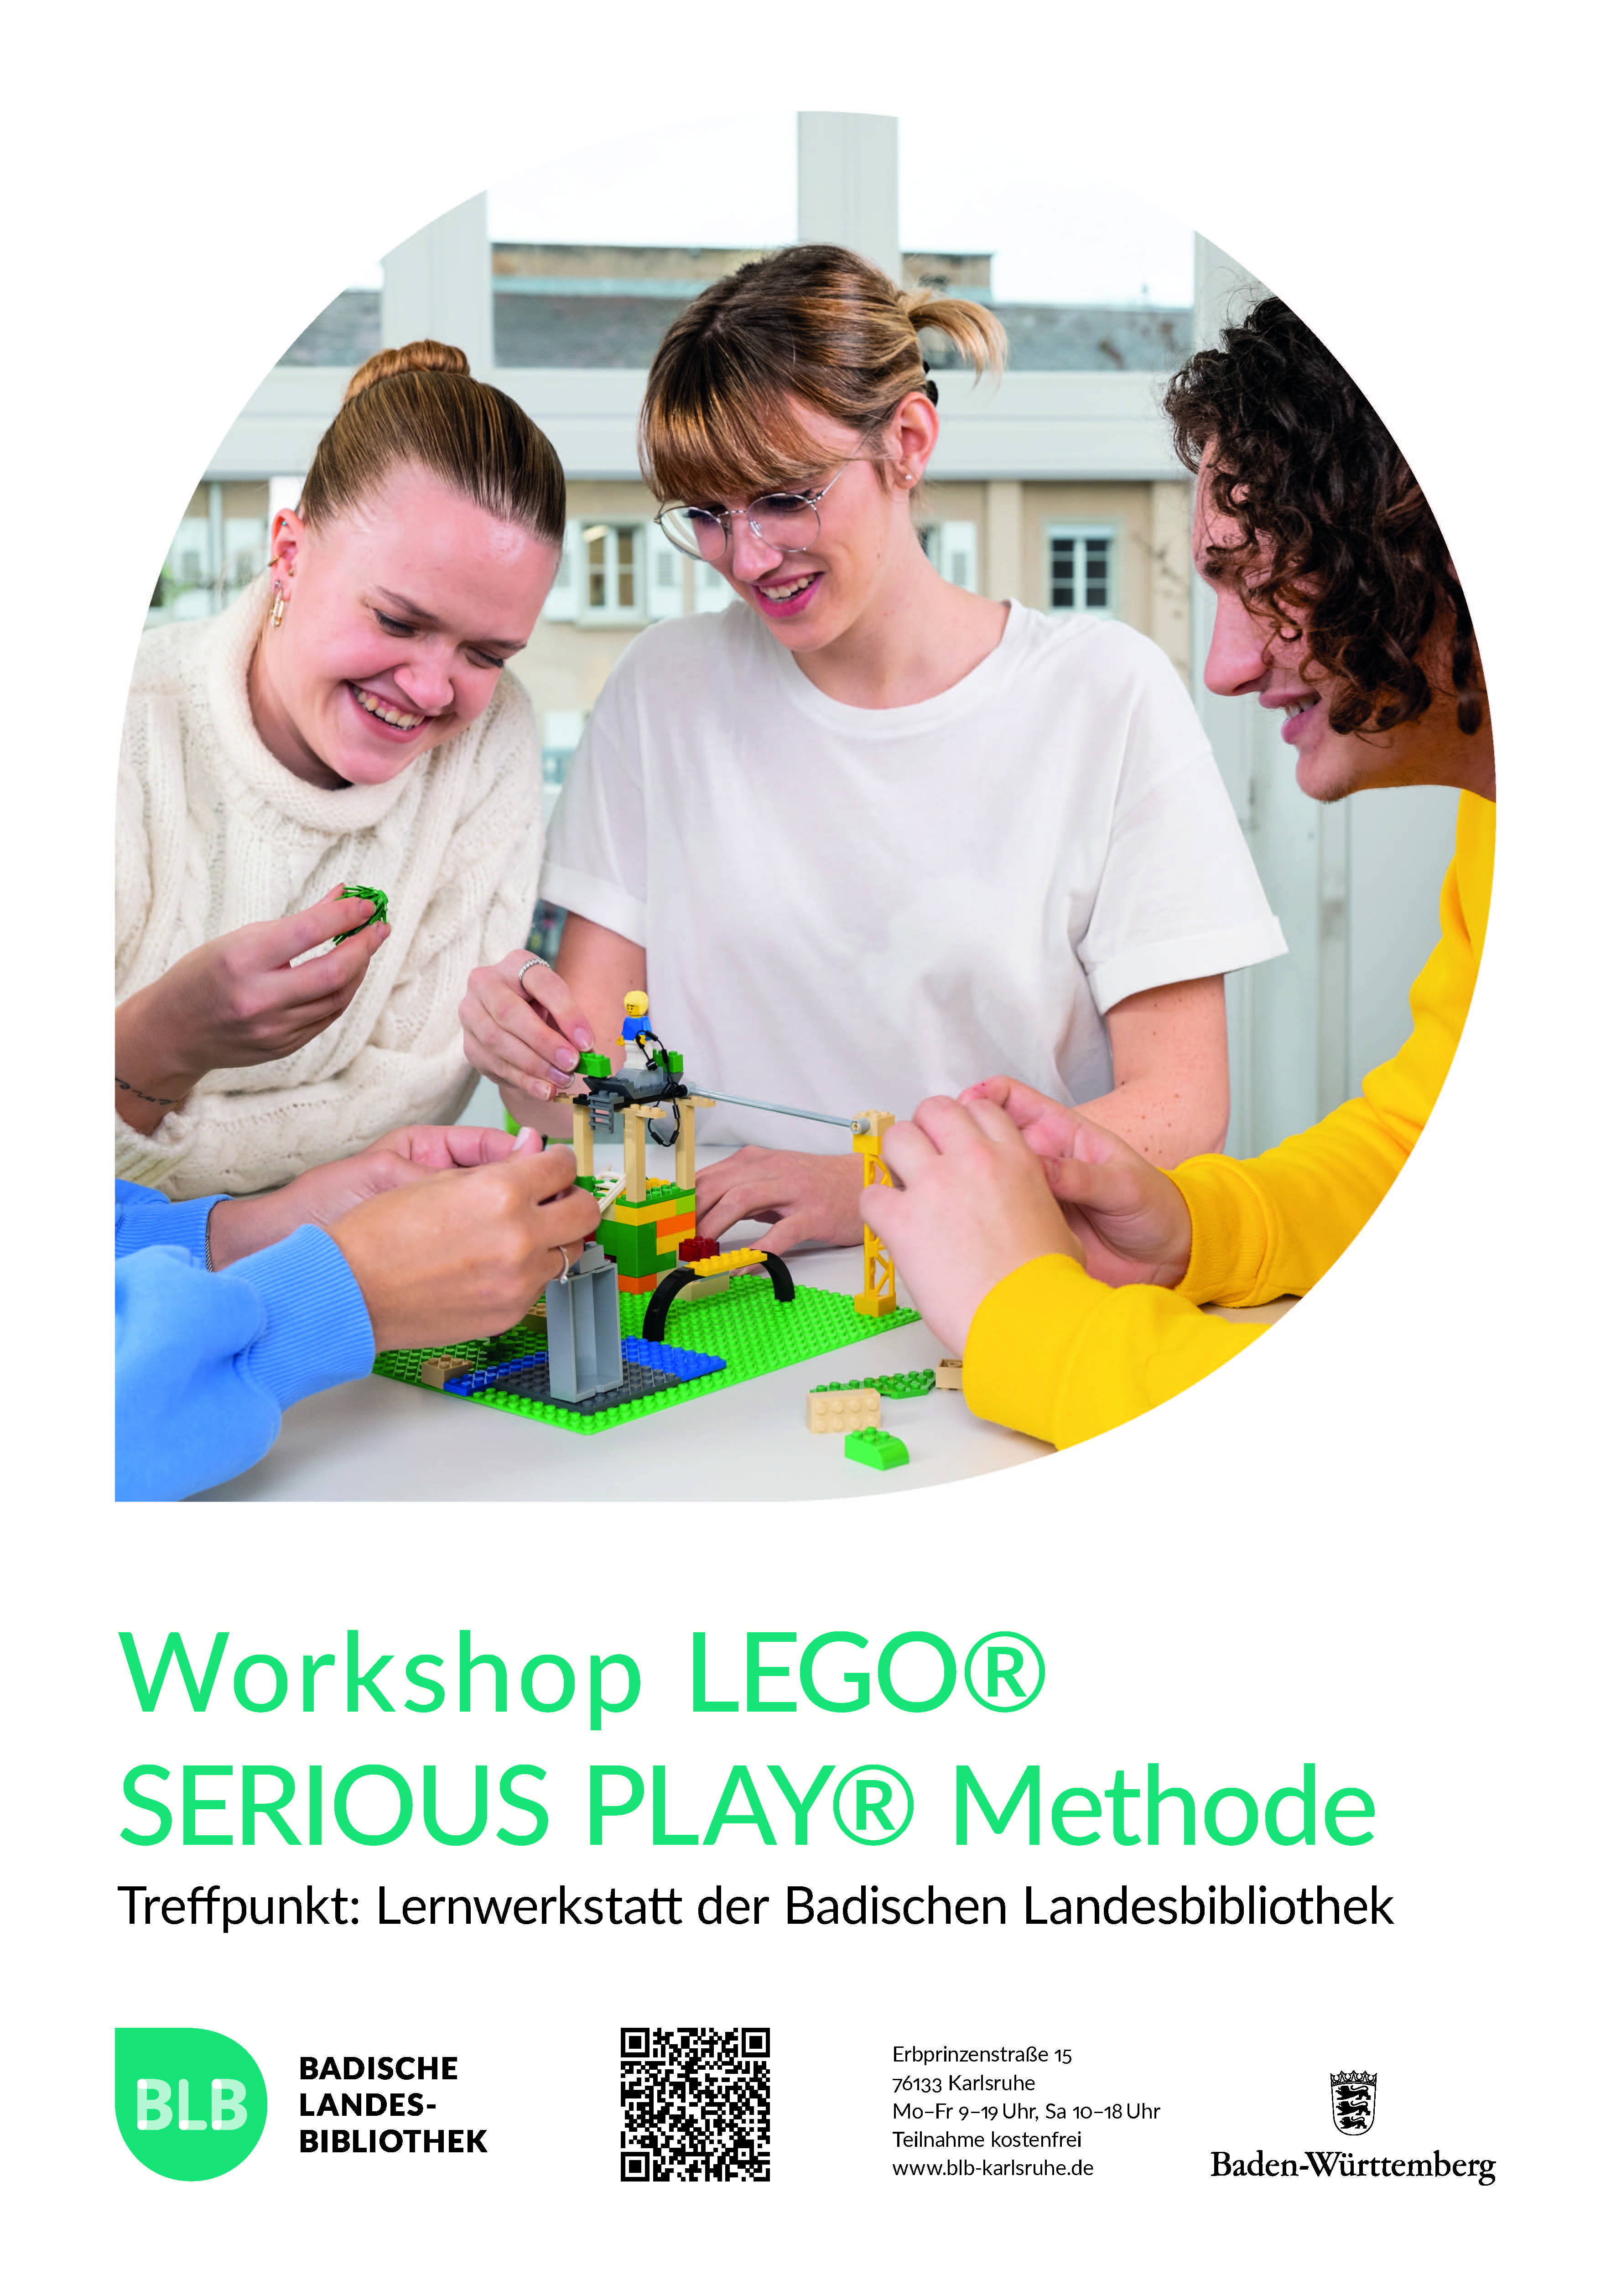 Zu sehen ist ein Monogon mit einem Foto von Lego-bauenden Personen. Darunter steht: Workshop Lego Serious Play Methode. Dieser findet in der Lernwerkstatt der Badischen Landesbibliothek Karlsruhe statt. 